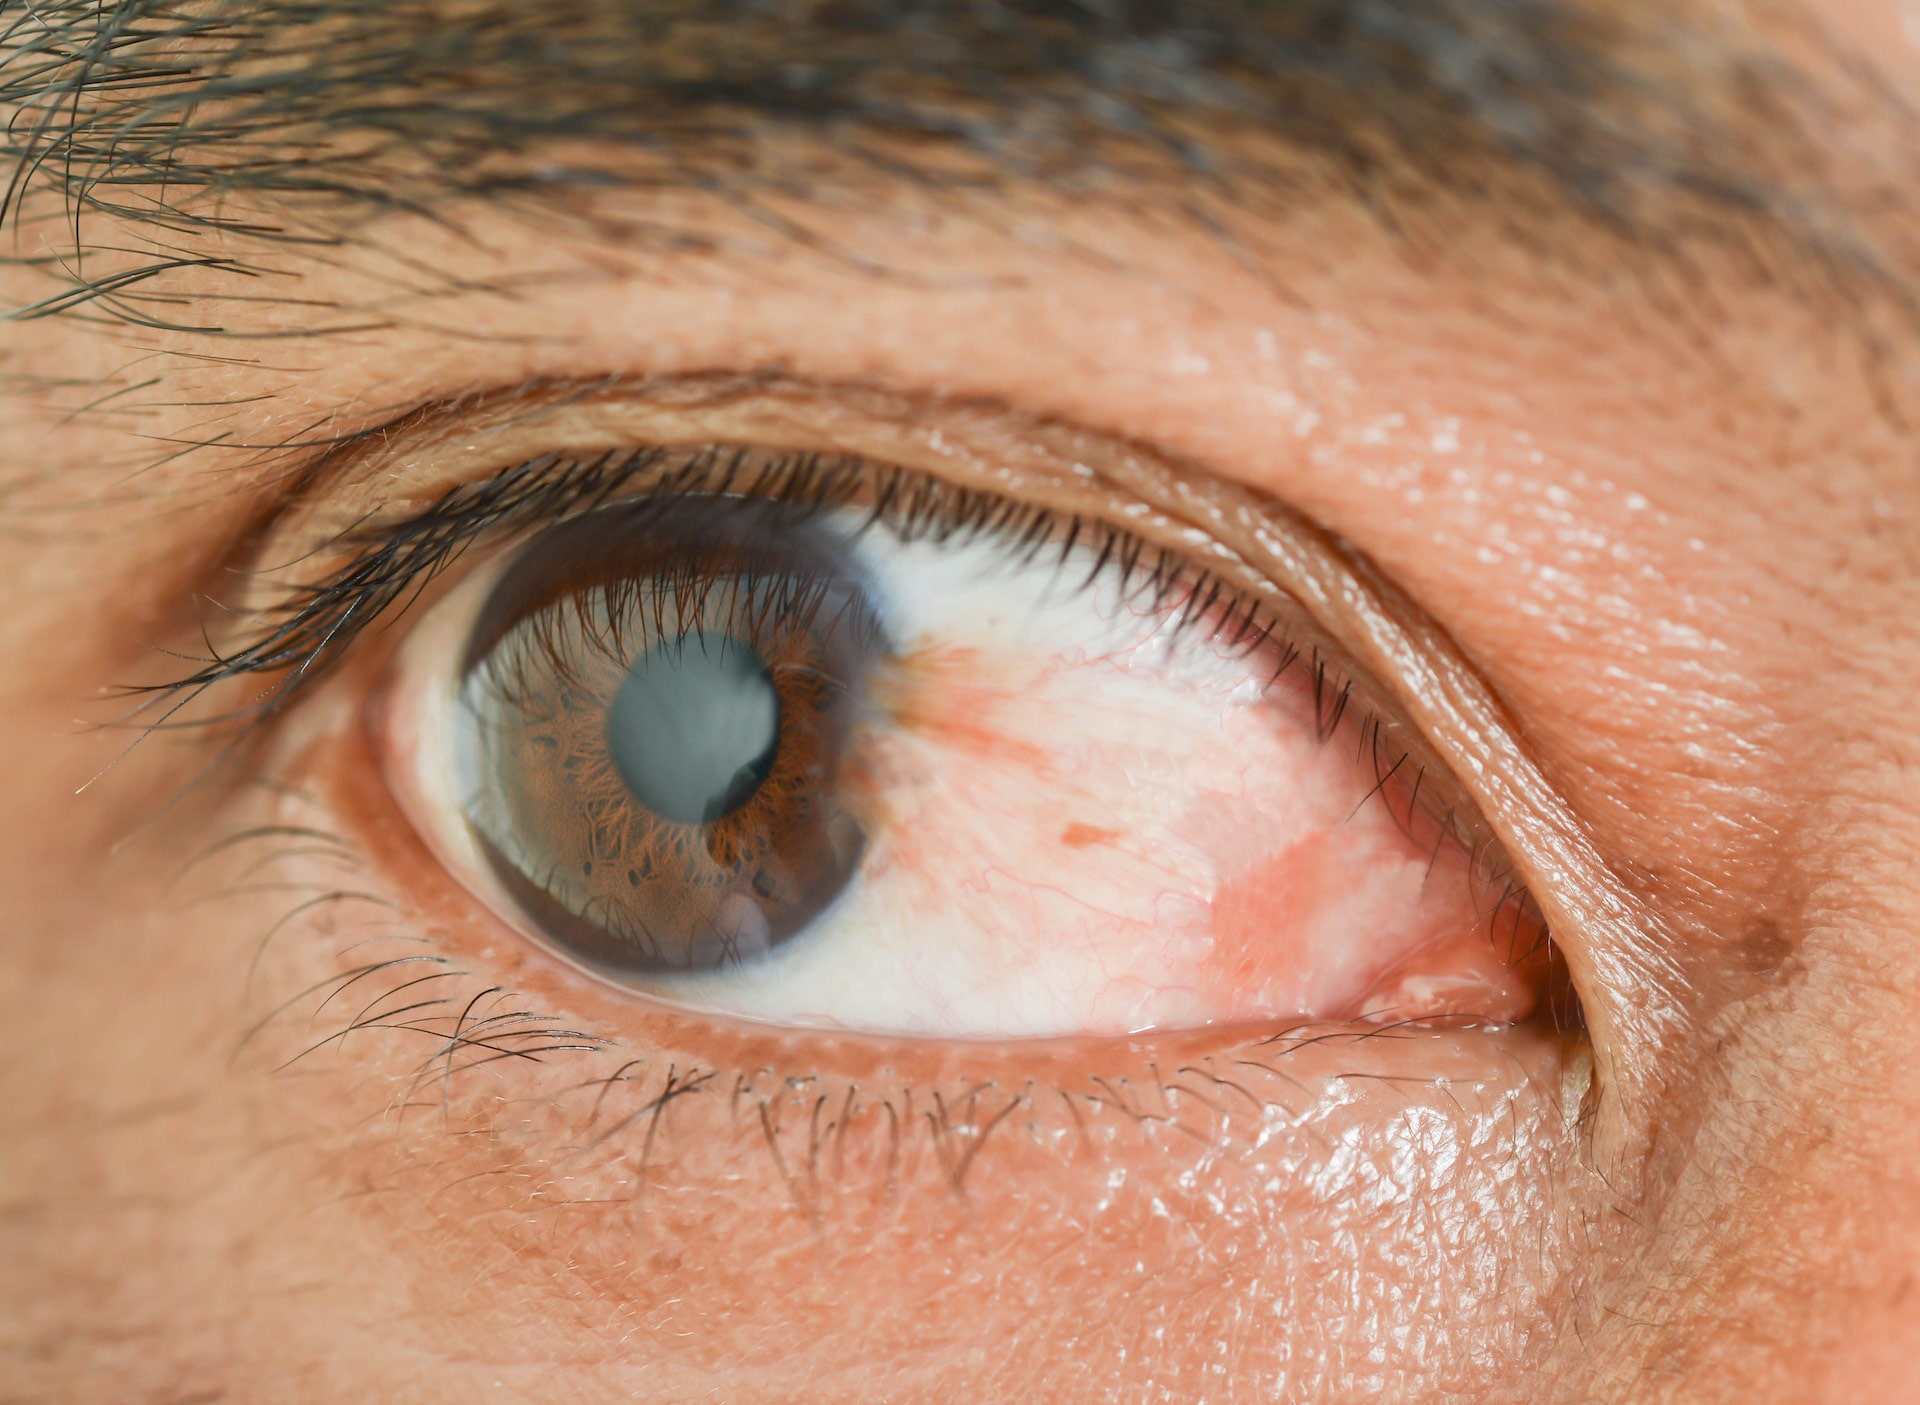 close up image of a bloodshot eye